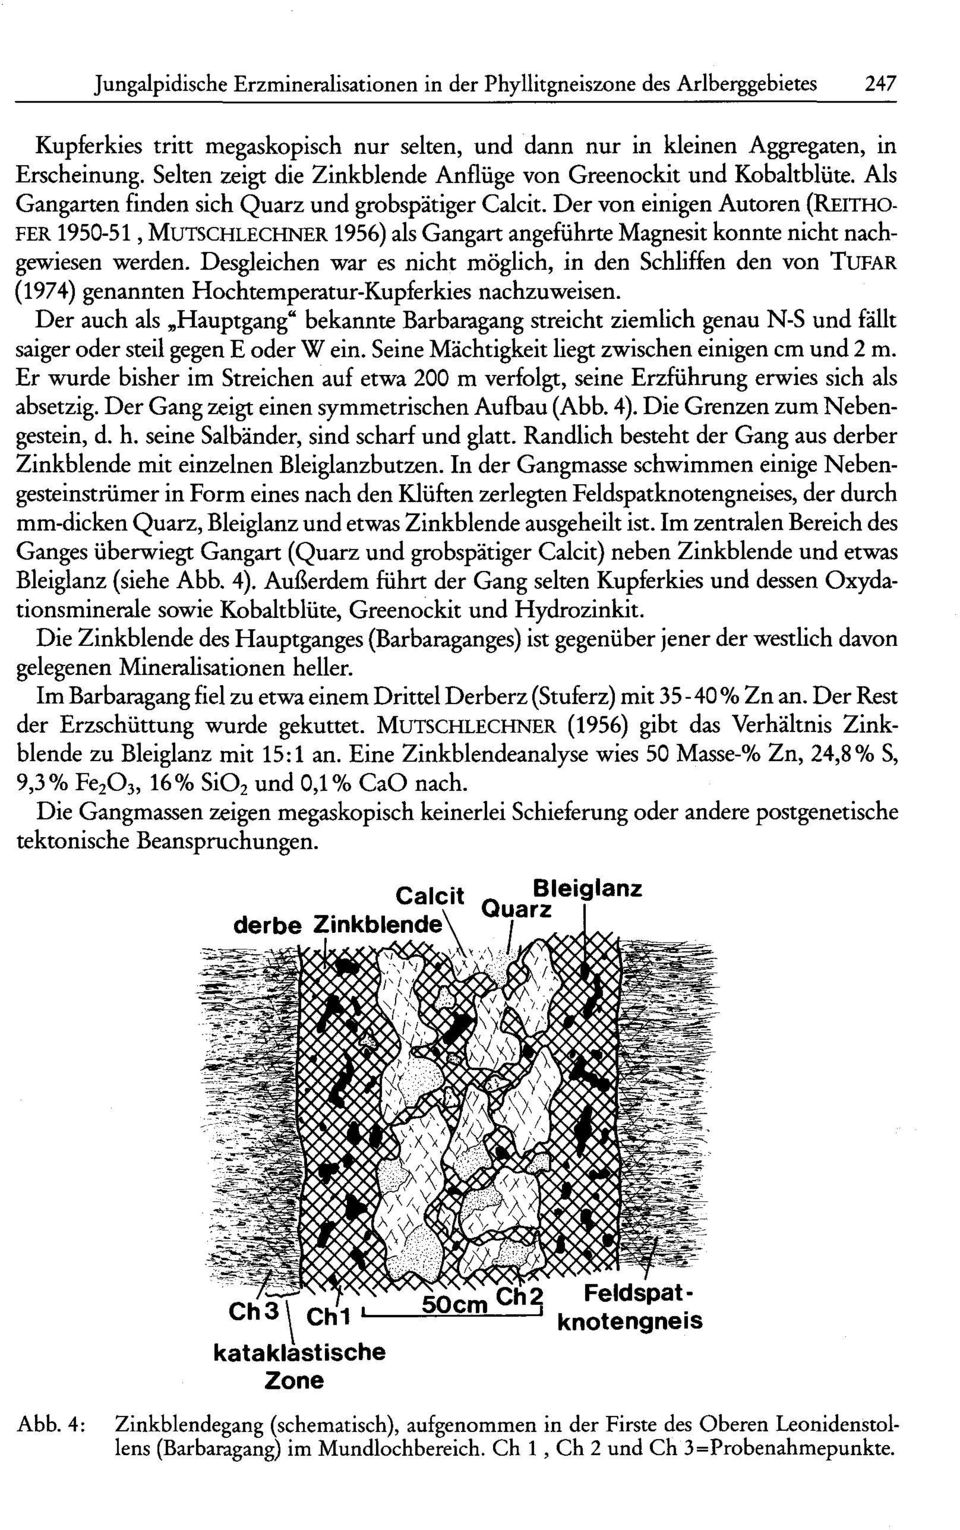 Der von einigen Autoren (REITHO- FER 1950-51, MUTSCHLECHNER 1956) als Gangart angeführte Magnesit konnte nicht nachgewiesen werden.